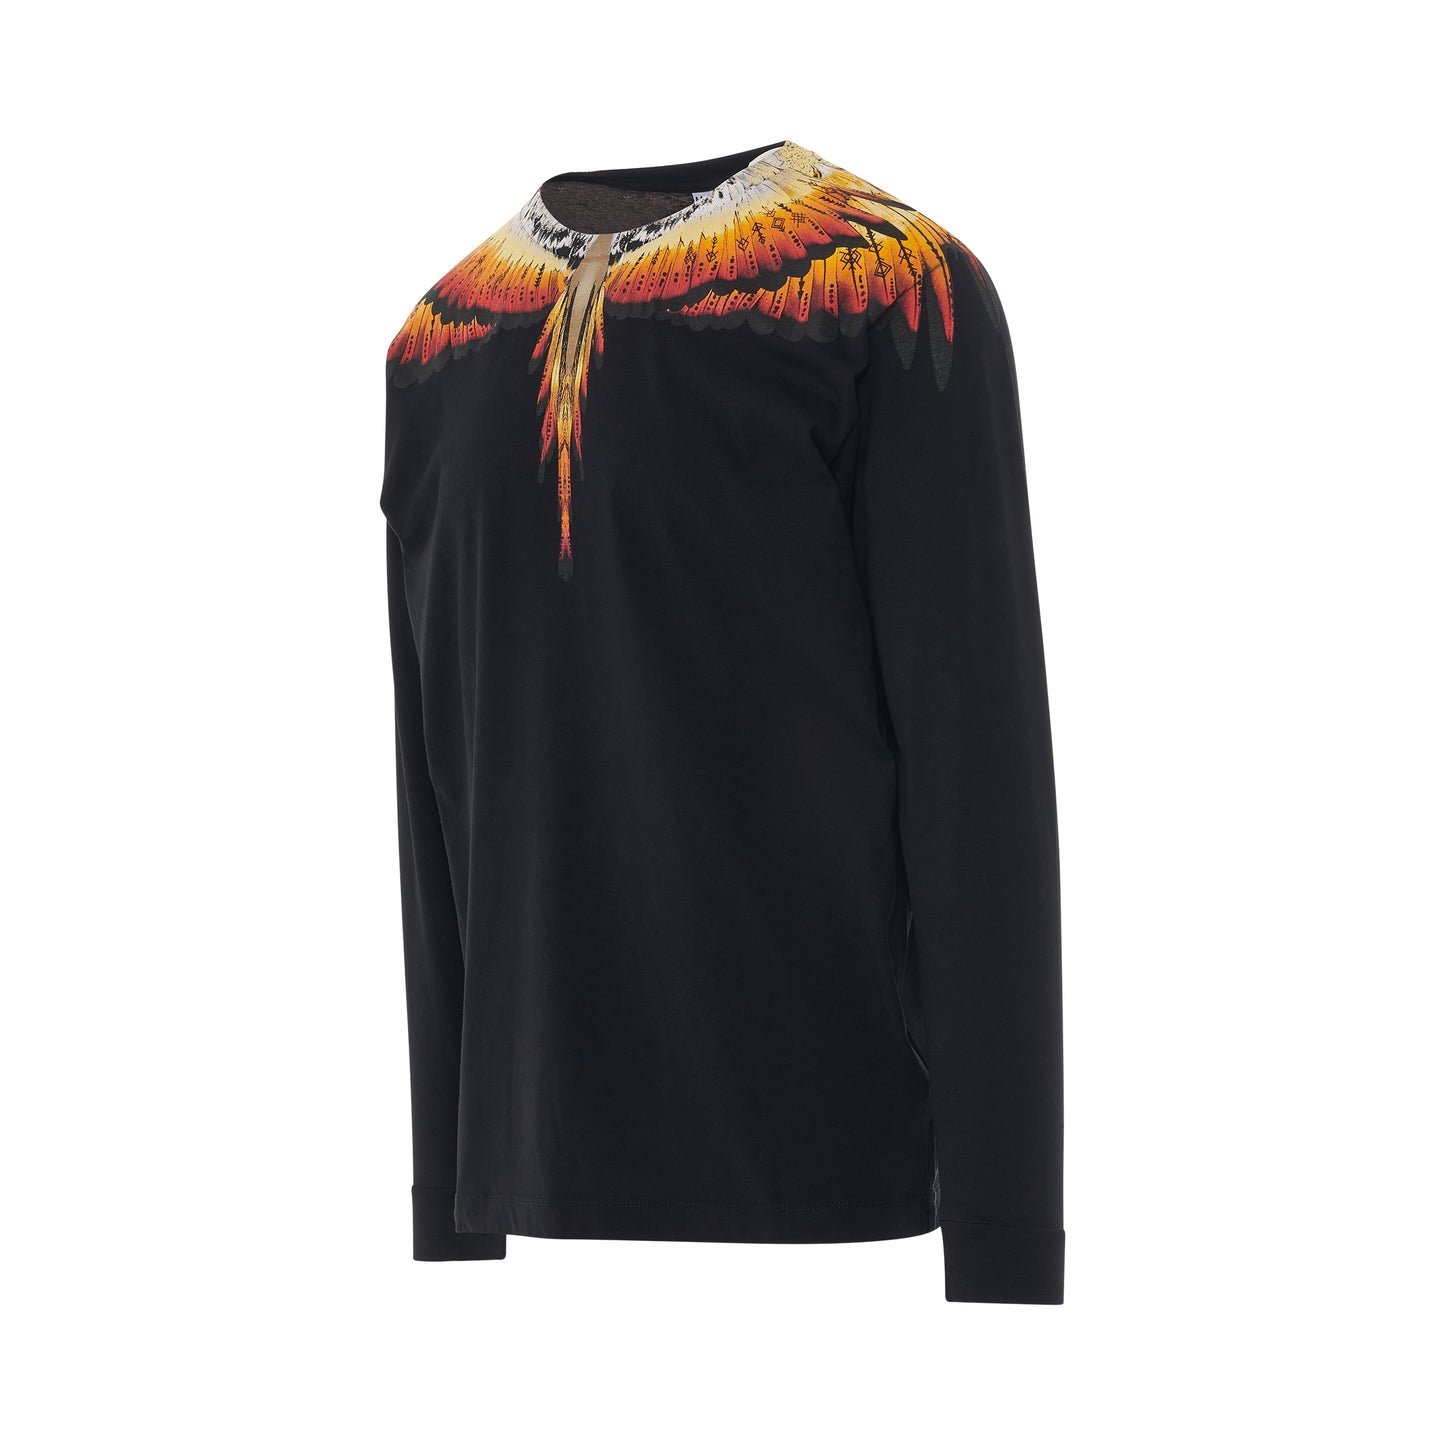 Solfolk Wings Regular Long Sleeve T-Shirt in Black/Red